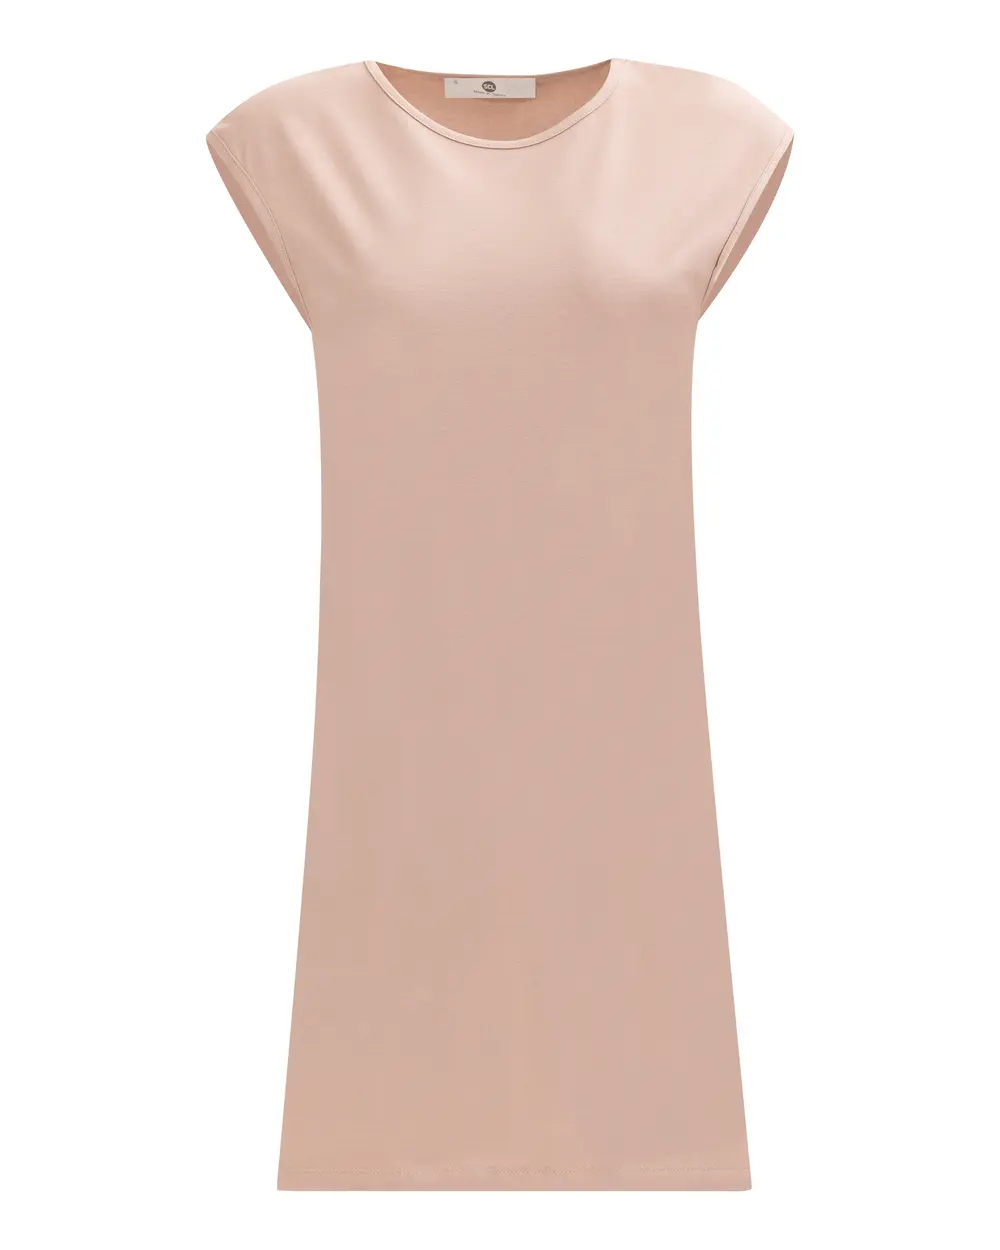 Round-necked Sleeveless Basic T-shirt